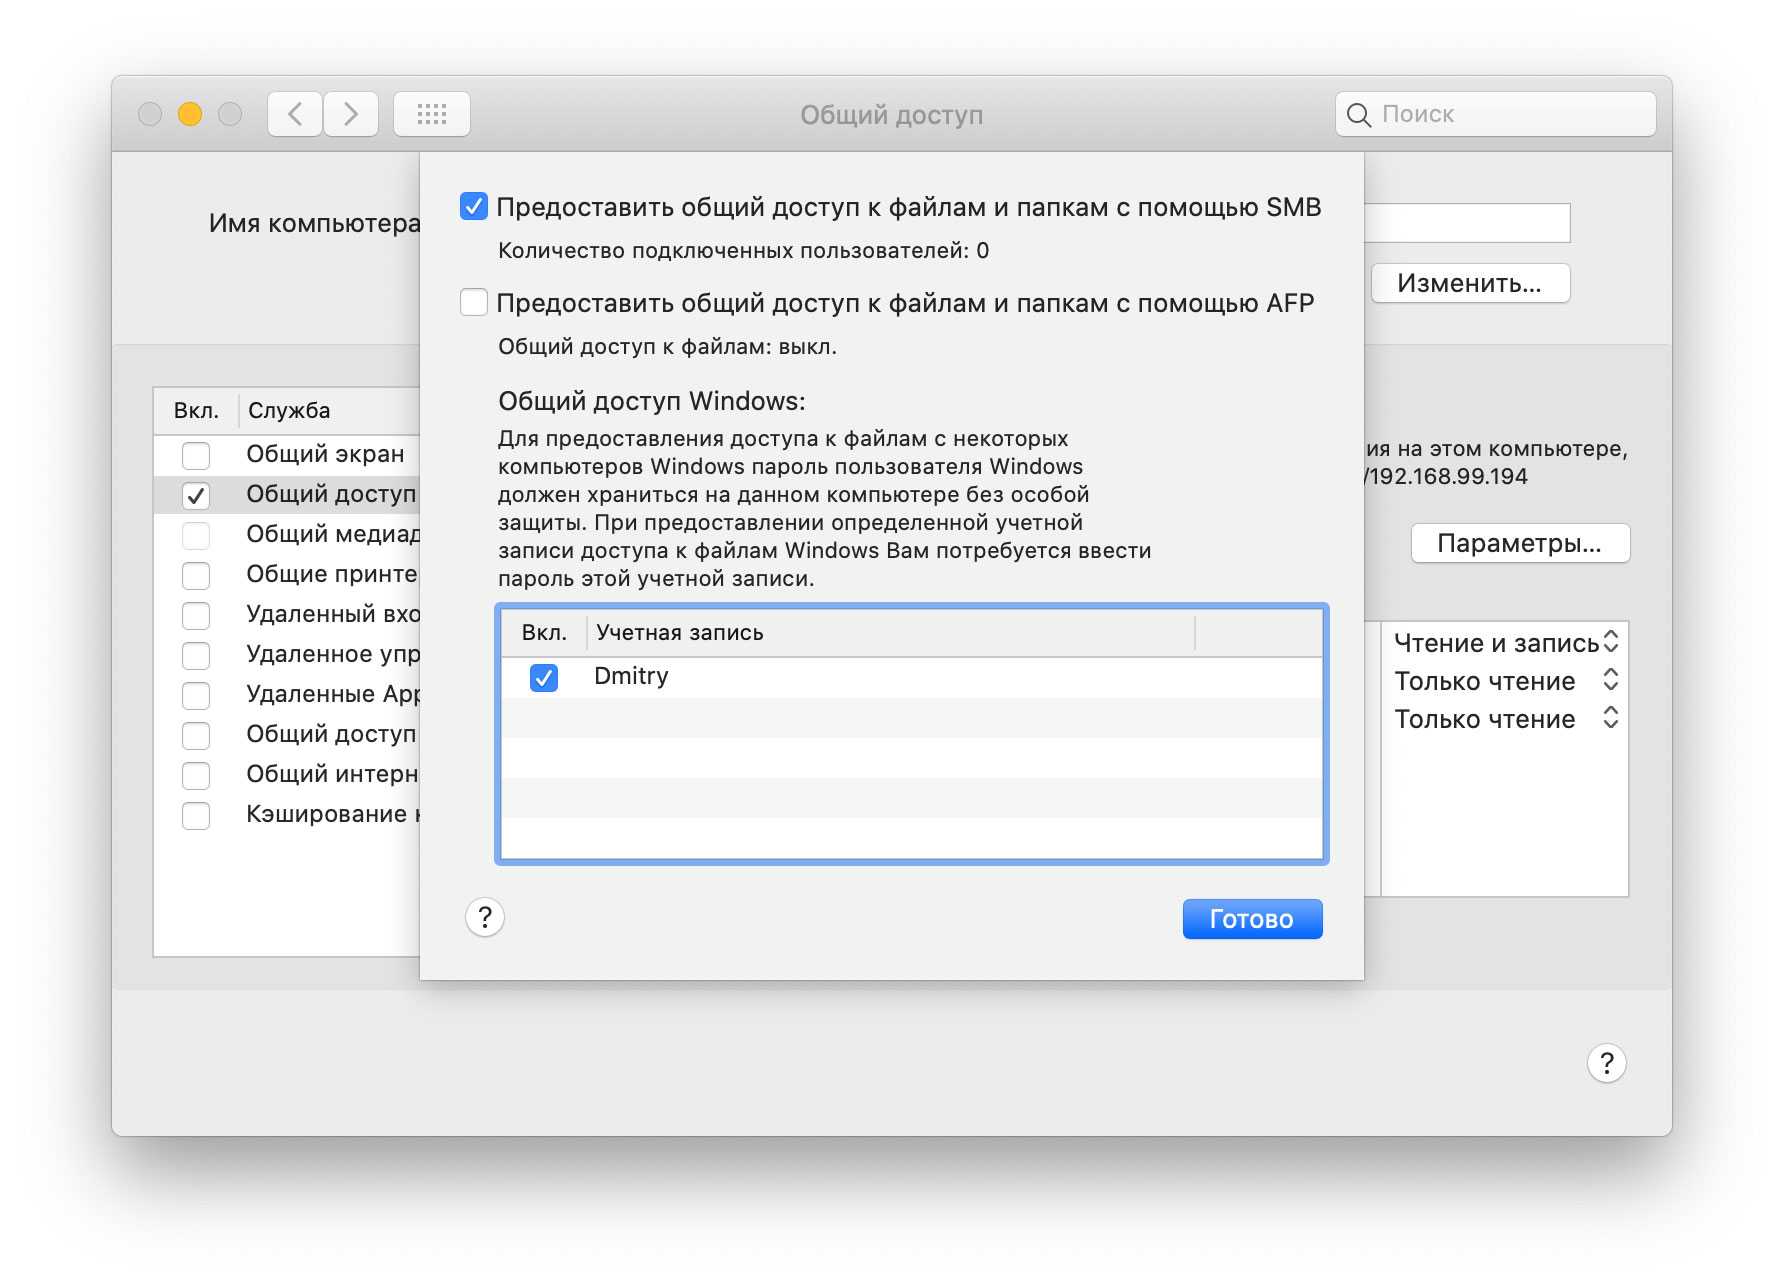 Как на mac (macos) создать новую учетную запись администратора, пользователя, гостя или группы